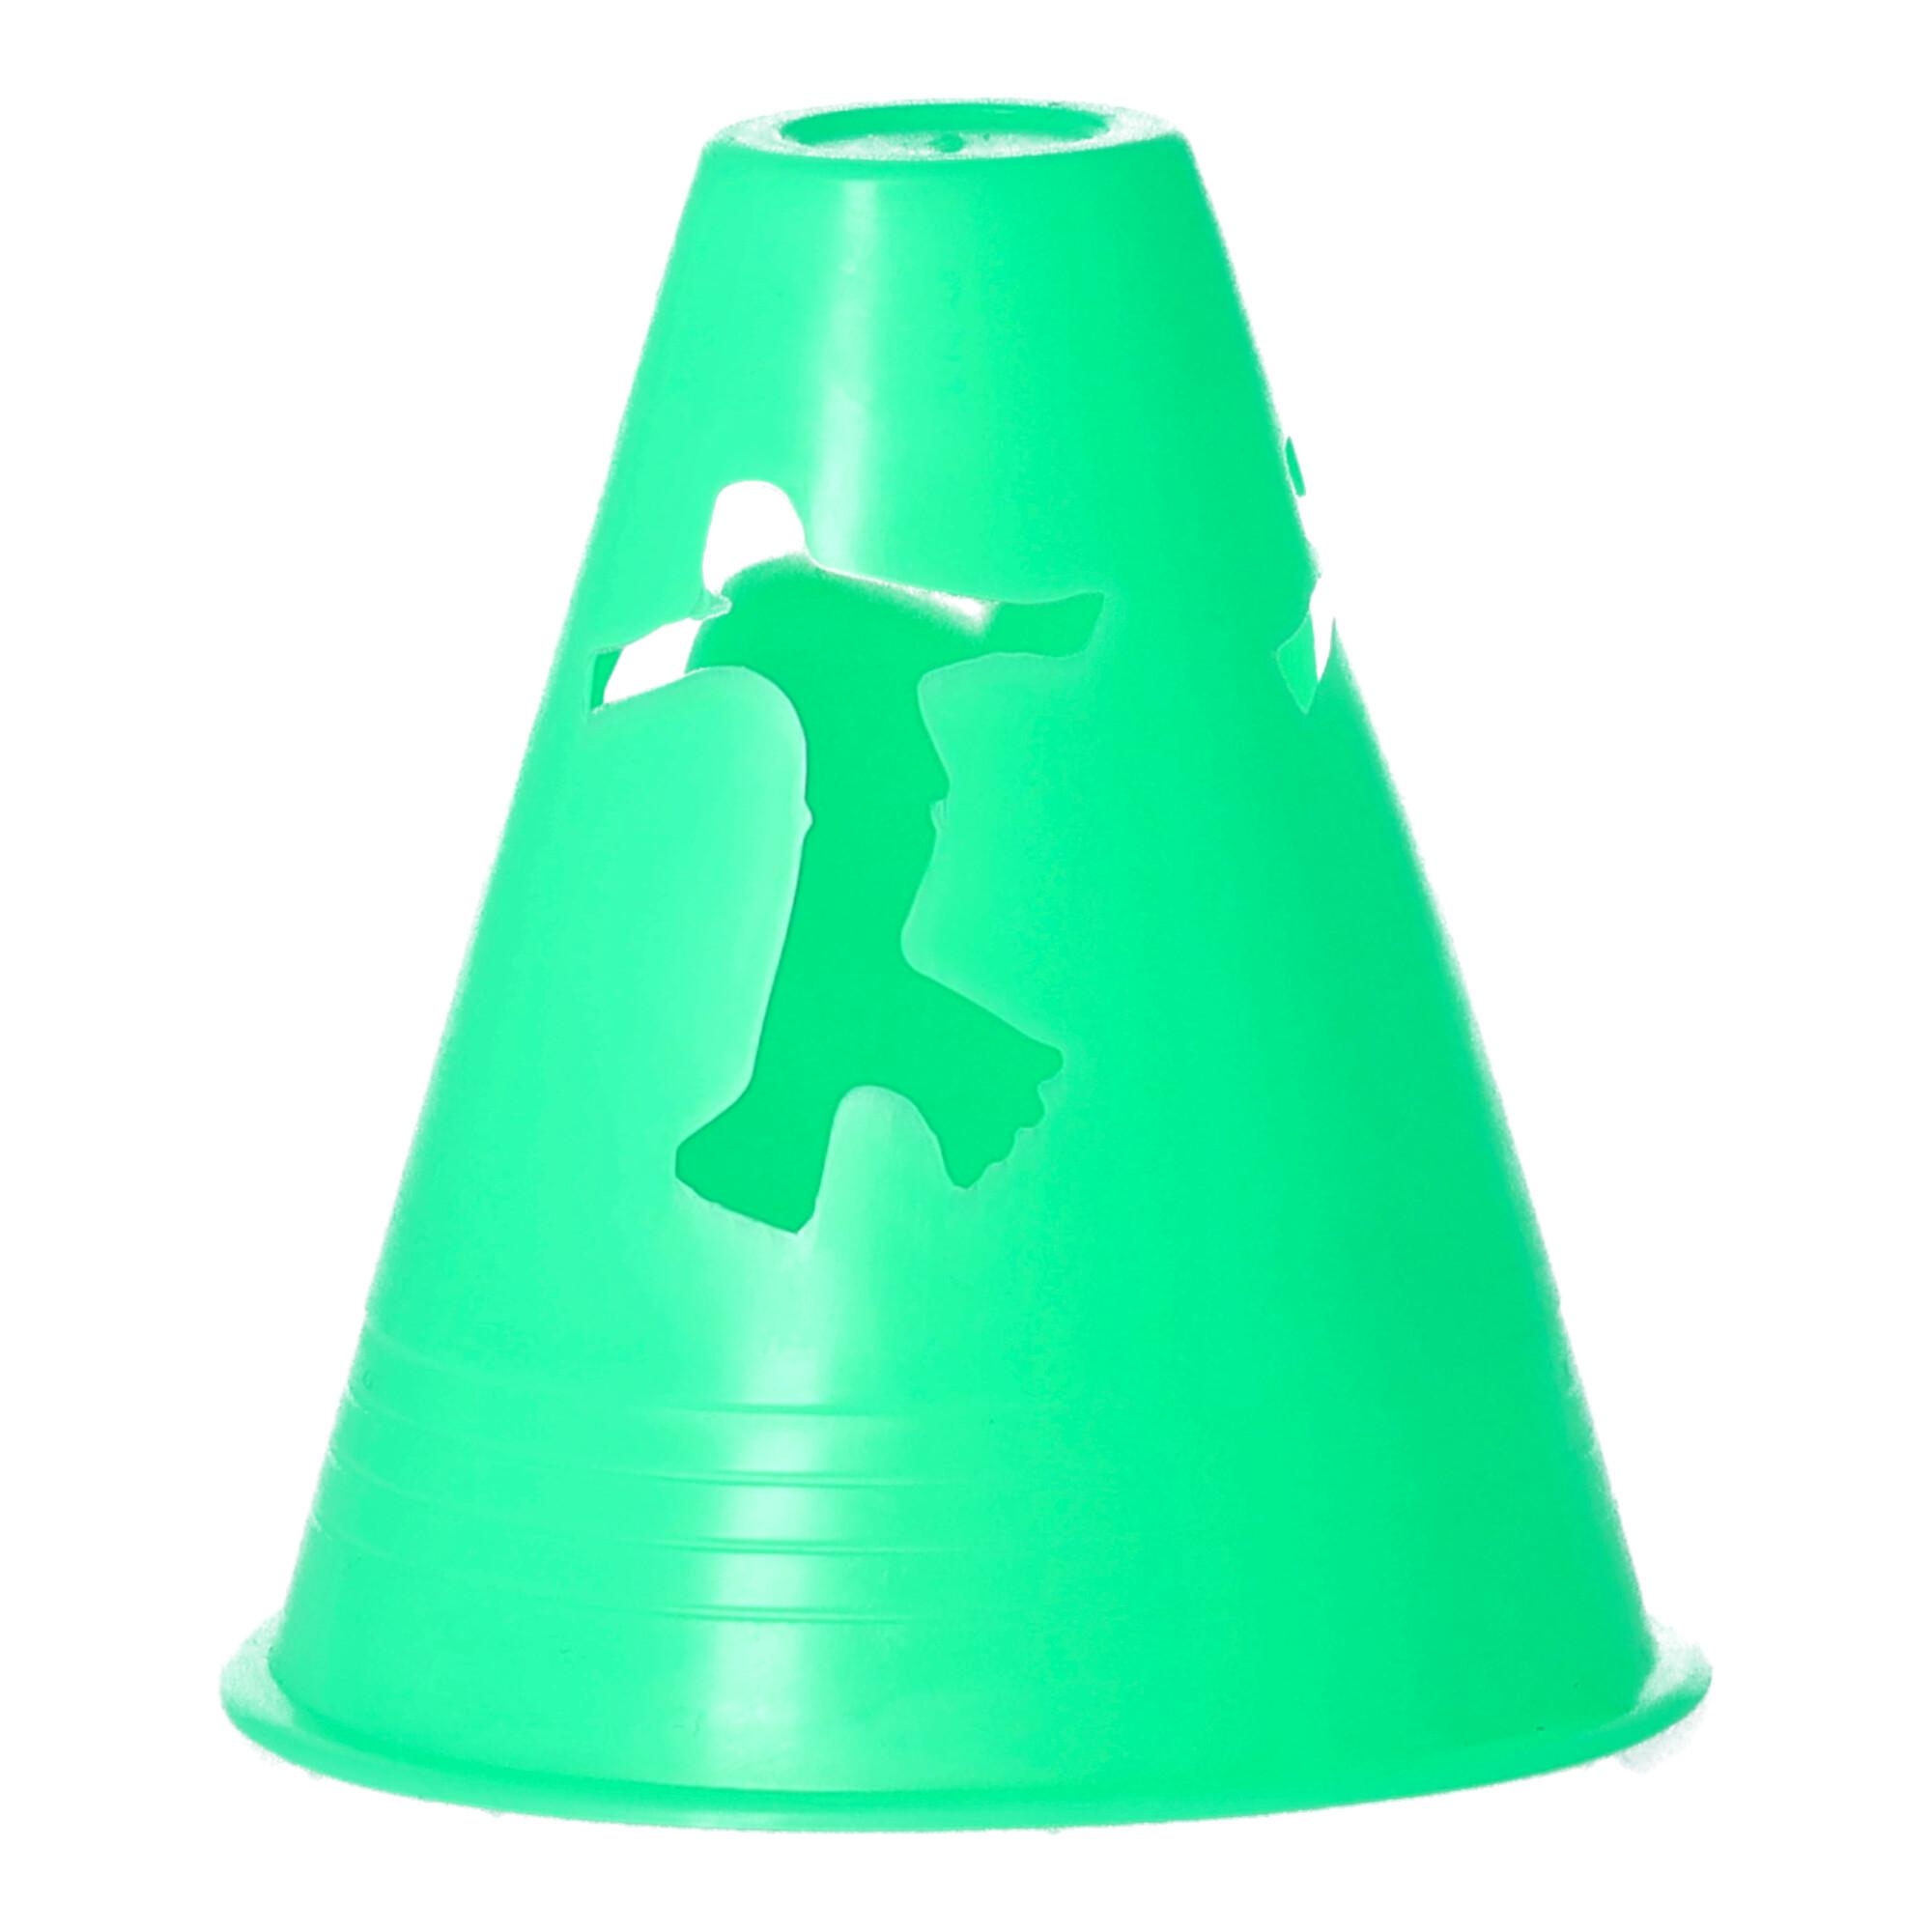 Slalom cones - green